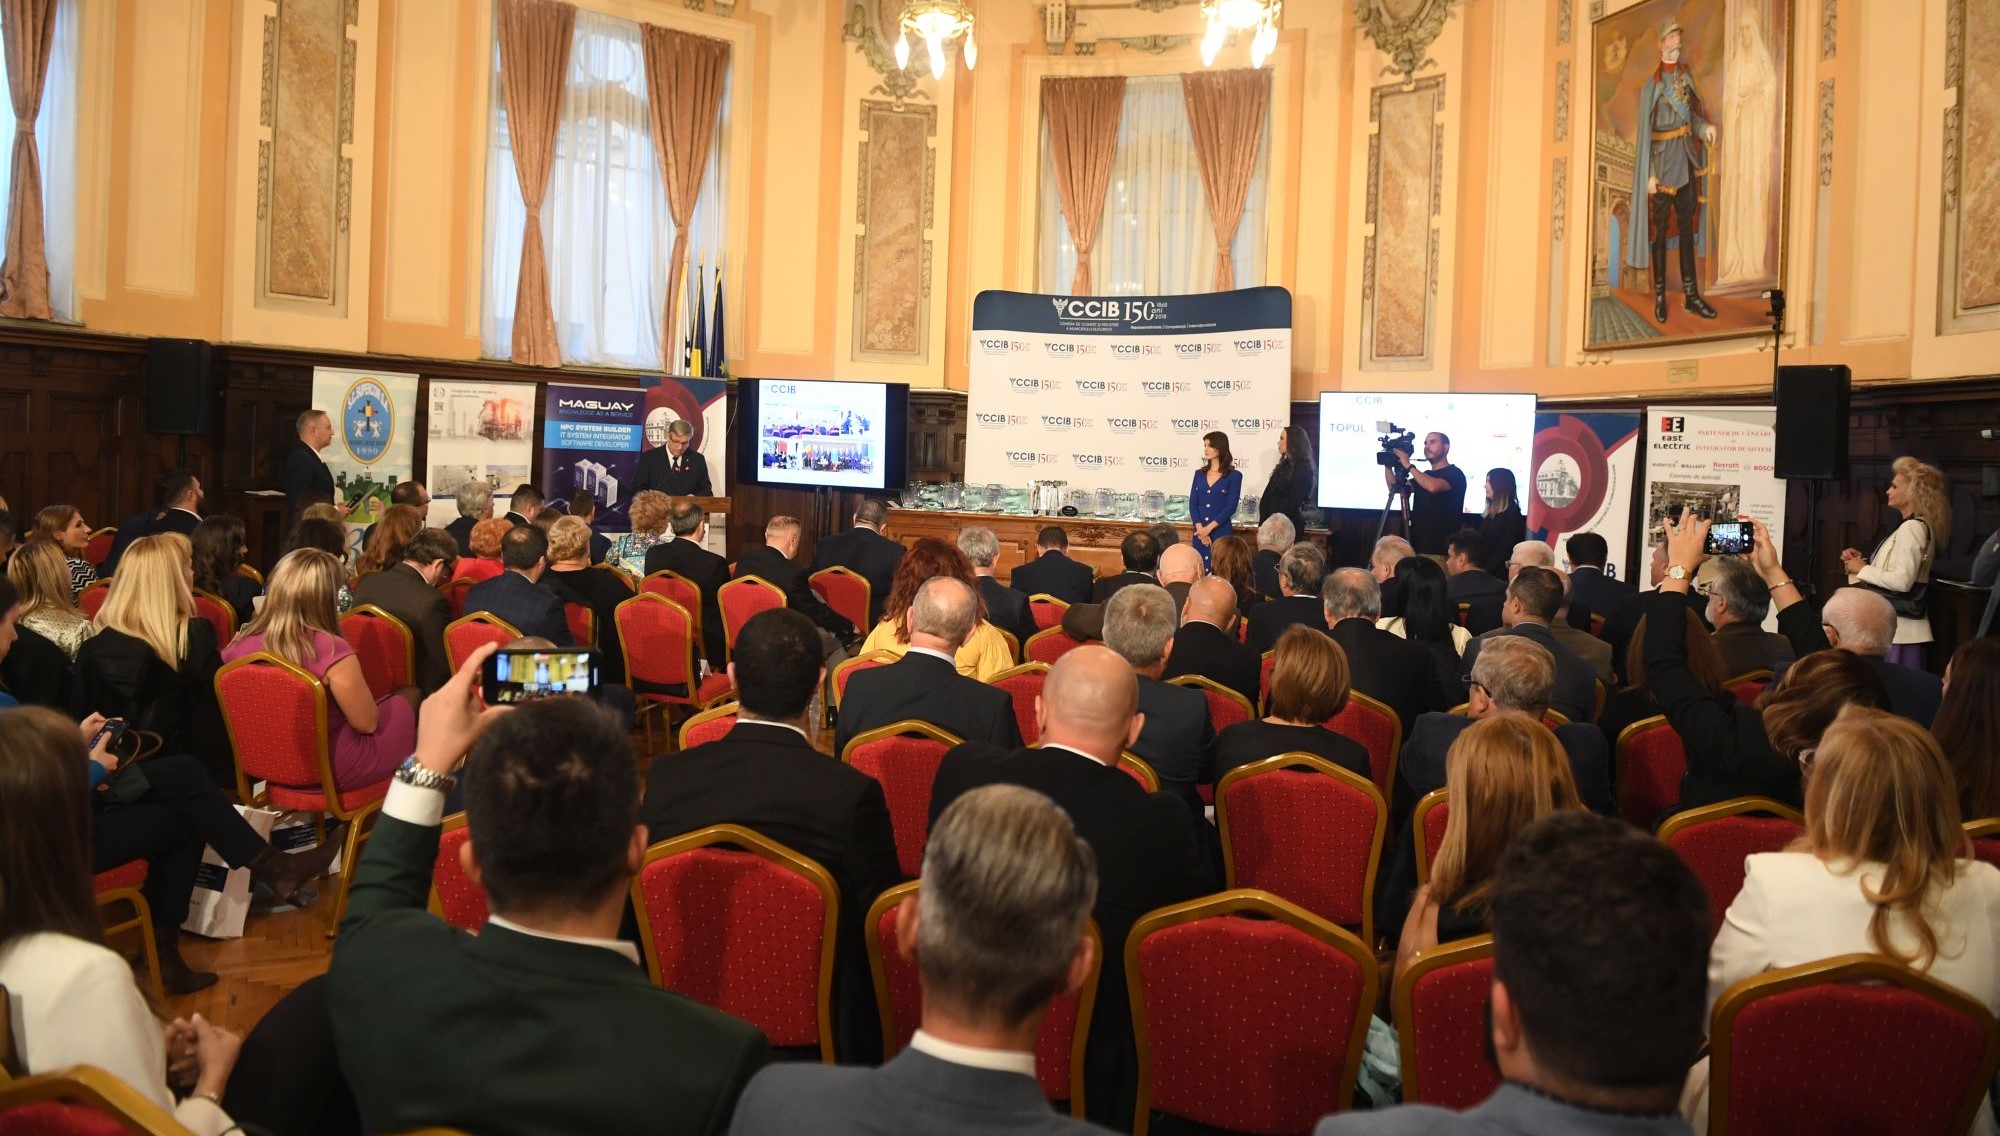 Camera bucureșteană a premiat excelența în afaceri la Topul firmelor